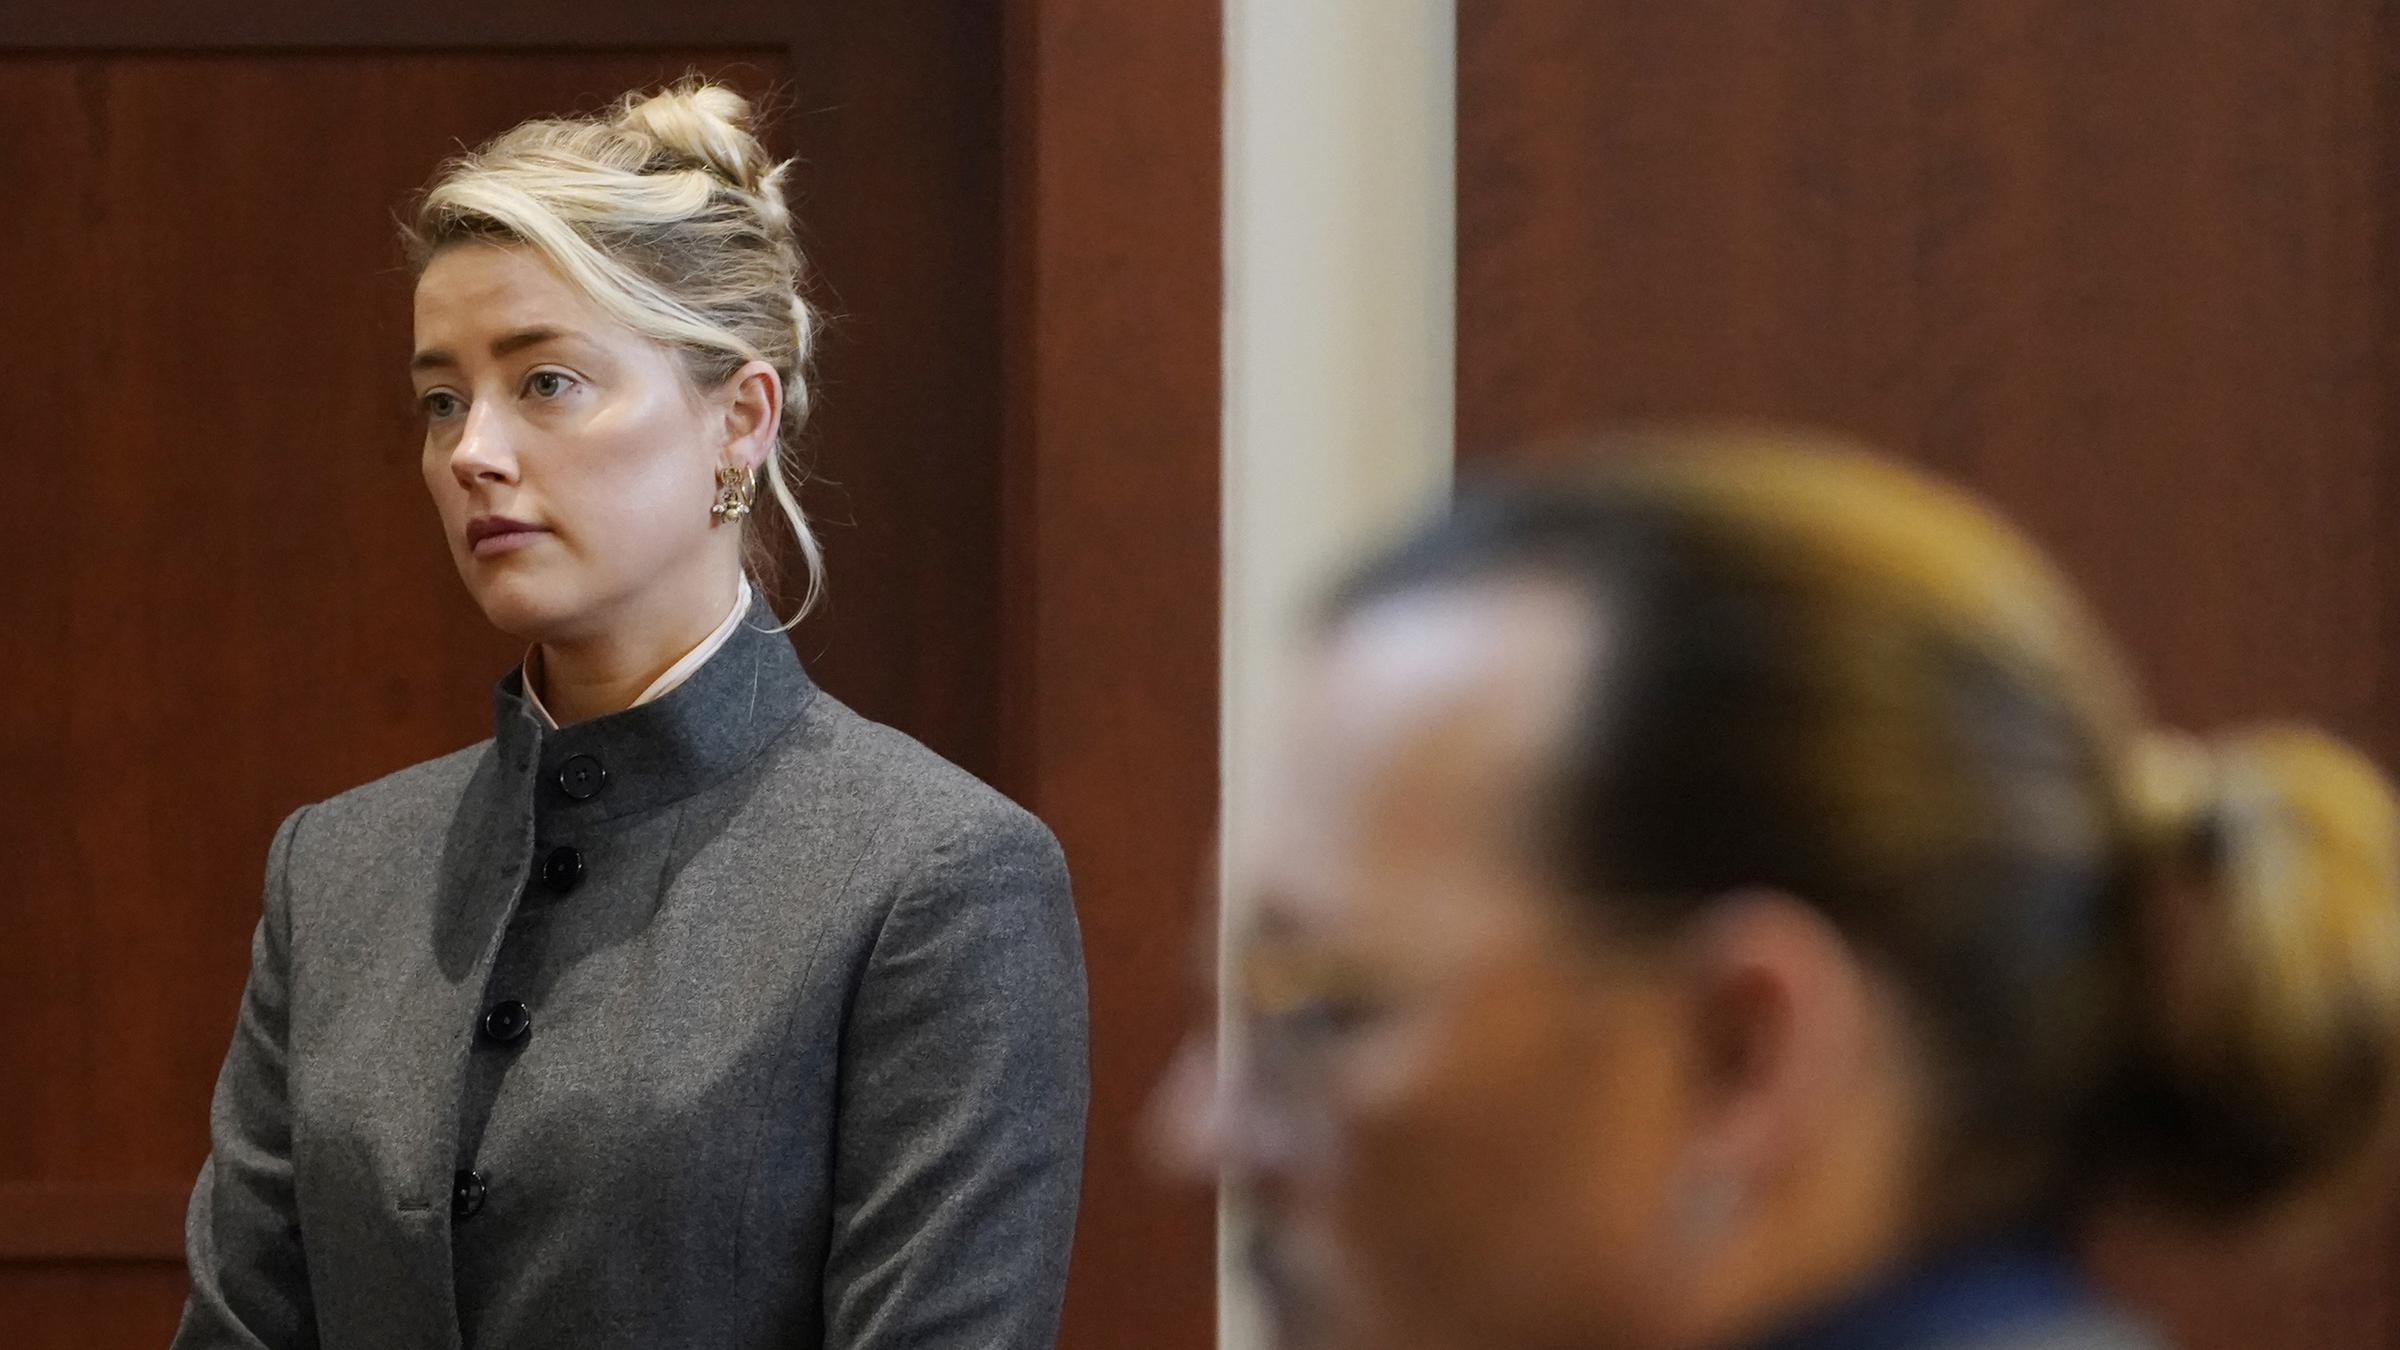 Archiv: Schauspielerin Amber Heard bezeugt am  16. 05. 2022, im Gerichtssaal des Fairfax County Circuit Courthouse in Fairfax, Virginia, während Schauspieler Johnny Depp zuhört.